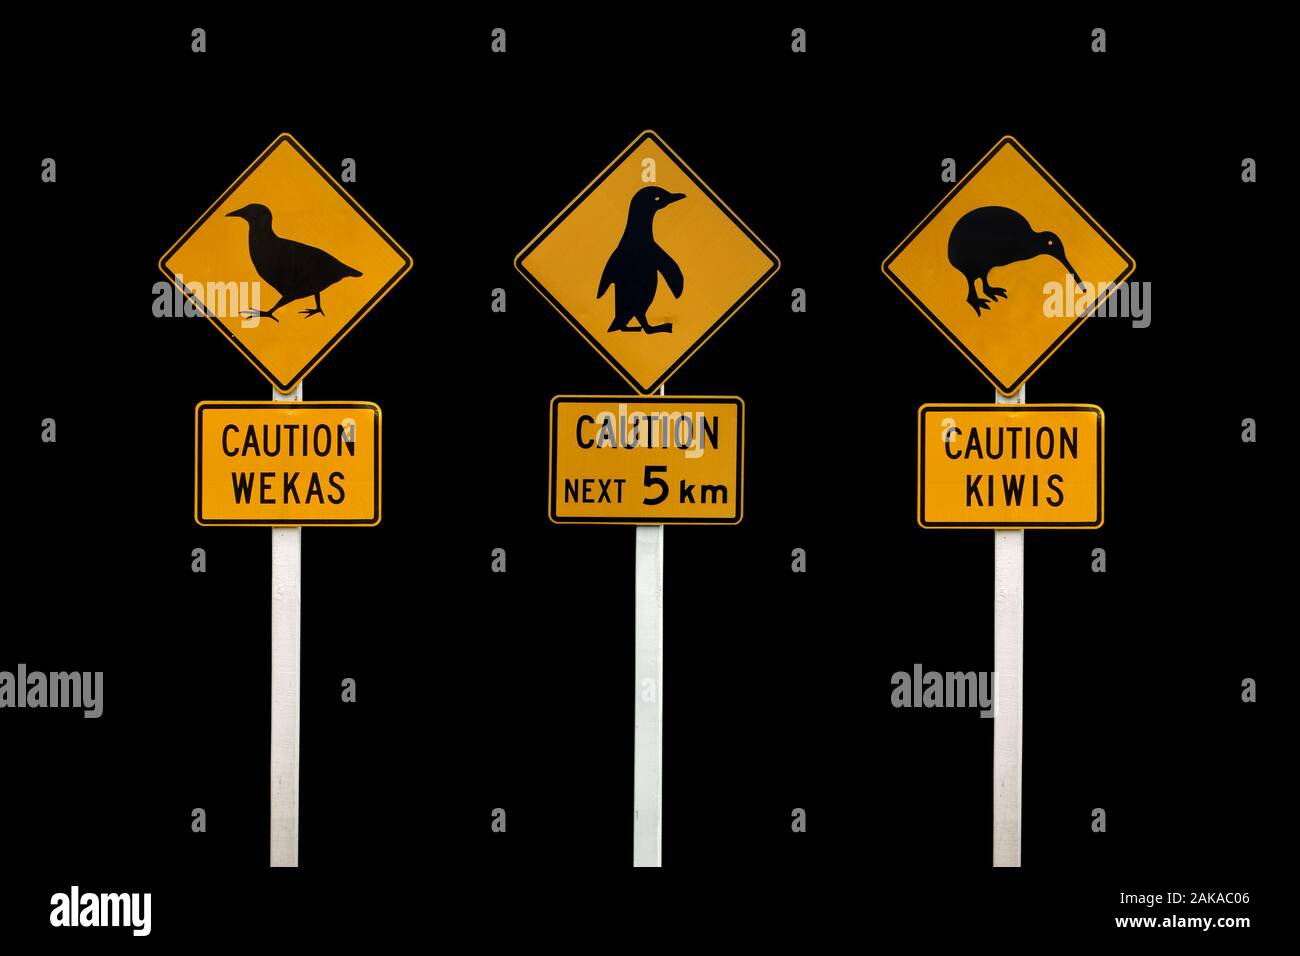 Nuova Zelanda indicazioni stradali su sfondo nero. Attenzione kiwi, wekas Attenzione, cautela pinguini Foto Stock